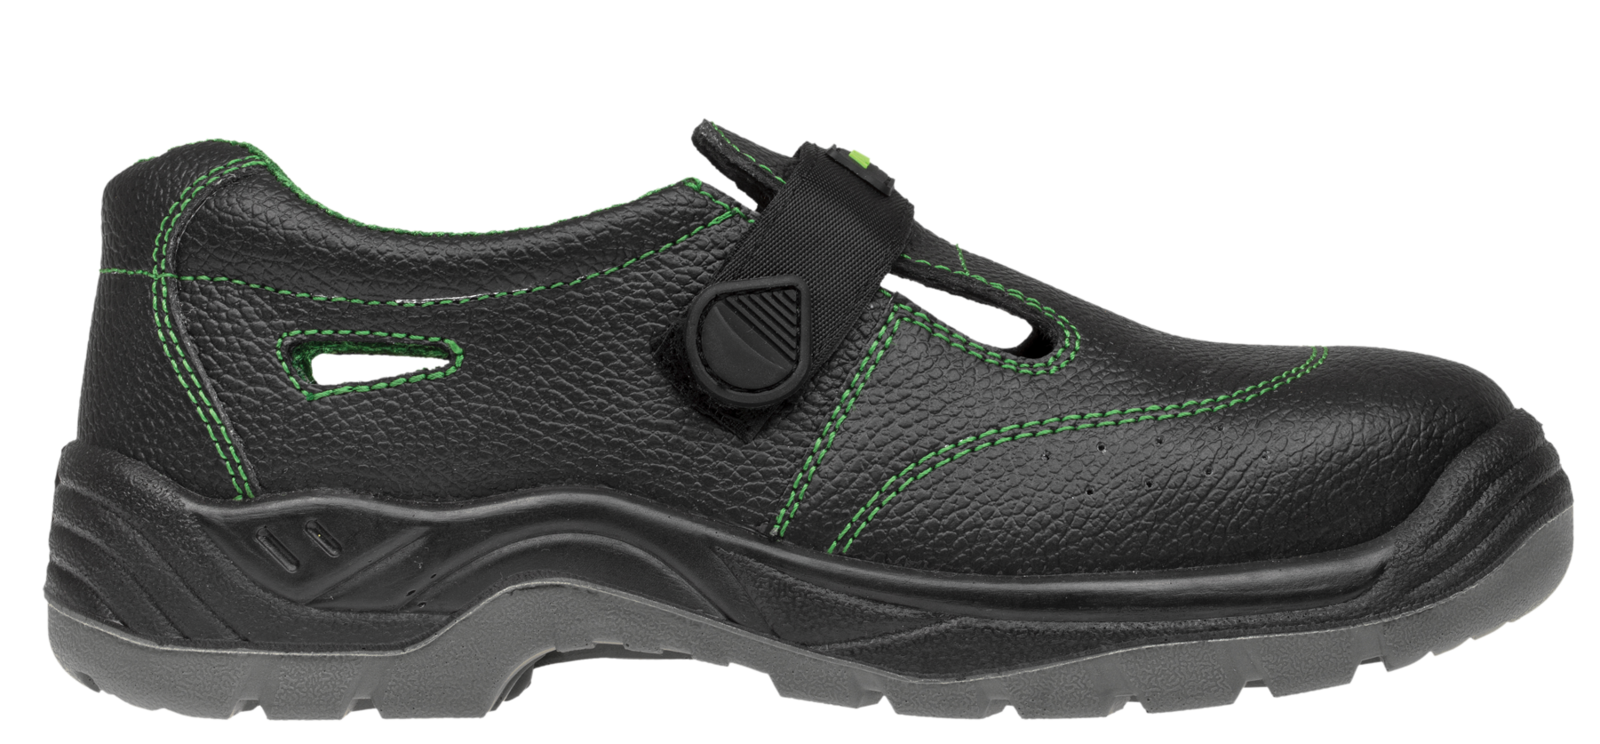 Bezpečnostné sandále Adamant Classic S1 - veľkosť: 42, farba: čierna